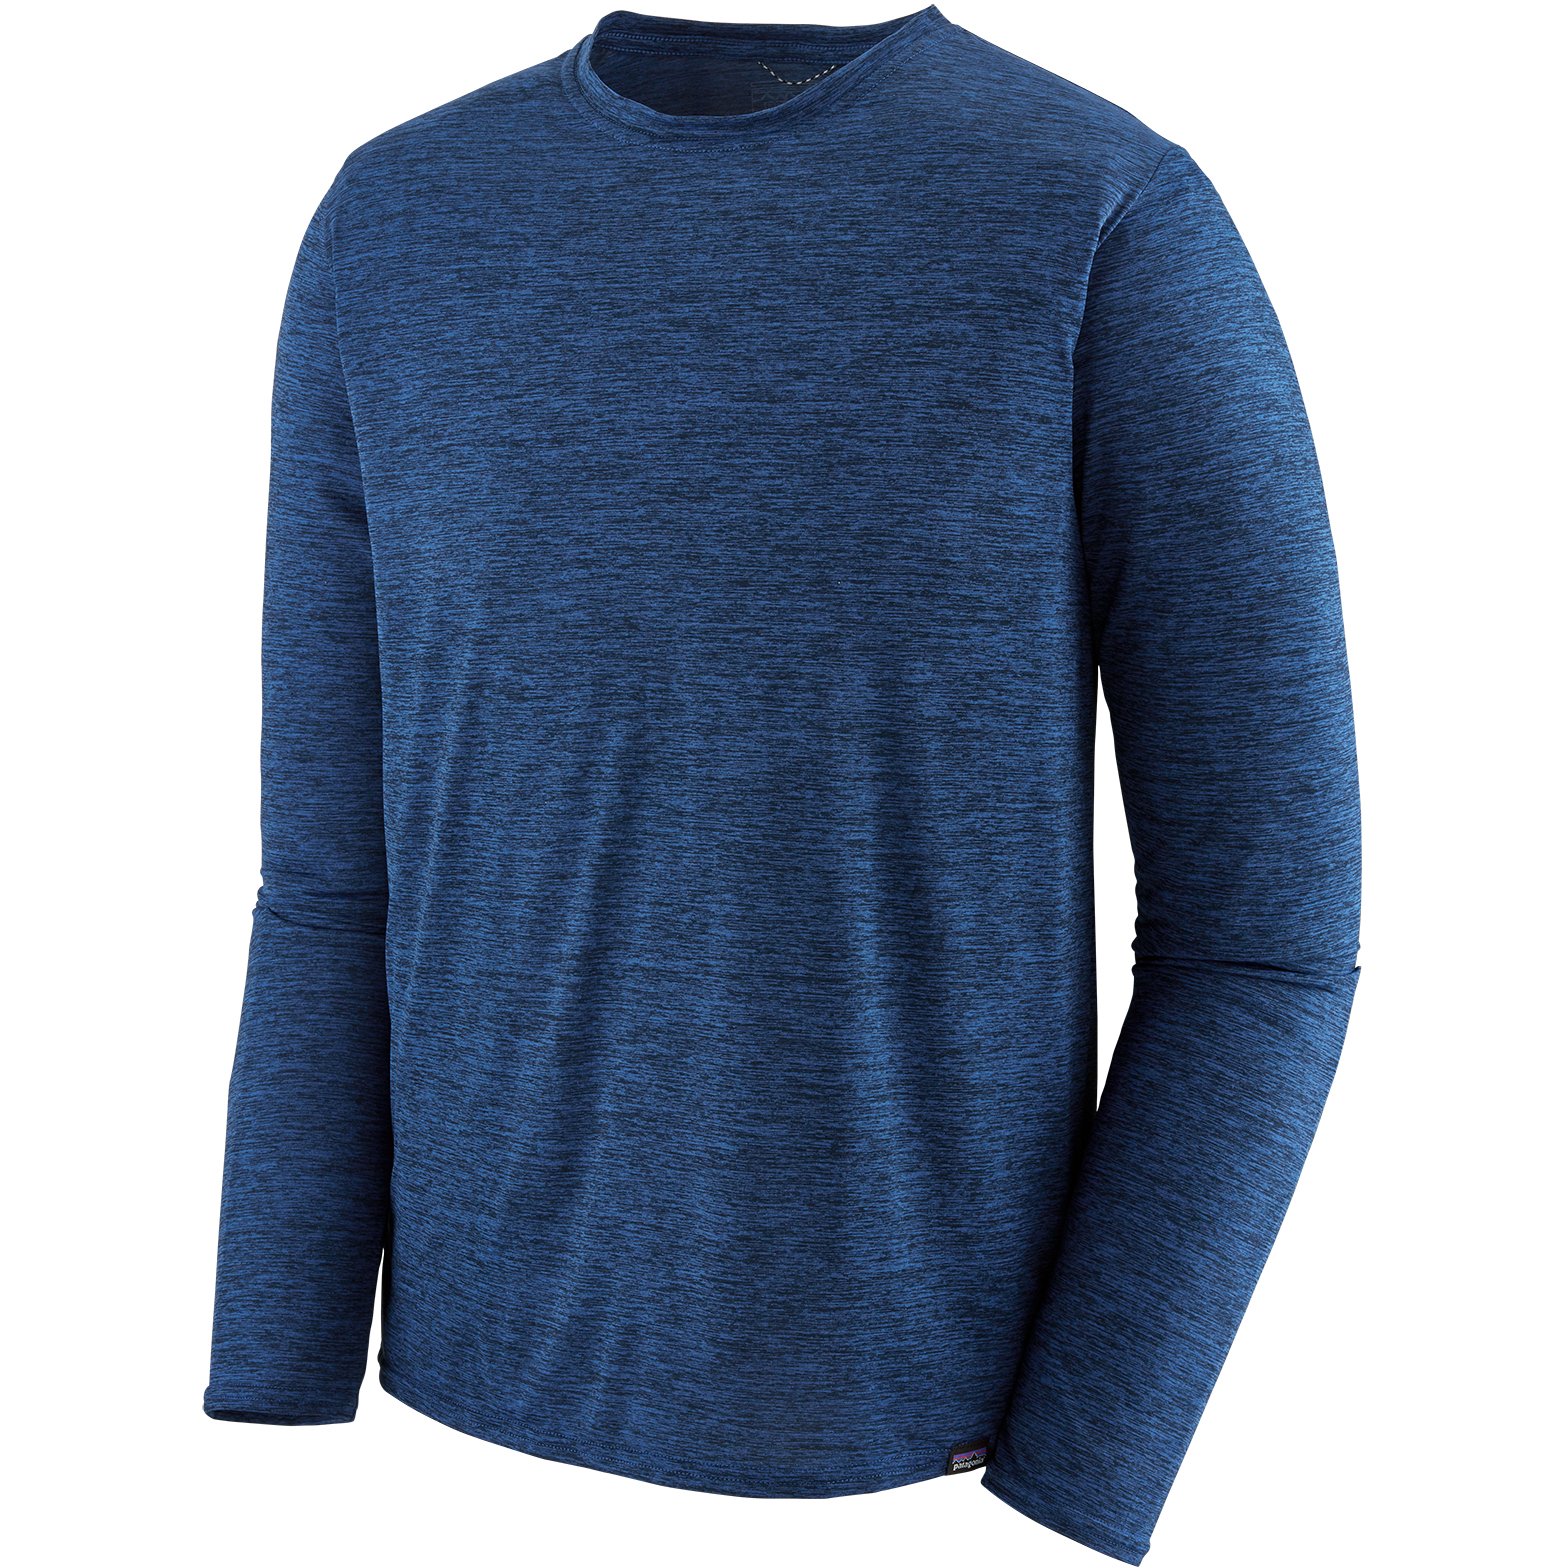 Productfoto van Patagonia Capilene Cool Daily Shirt met Lange Mouwen Heren - Viking Blue - Navy Blue X-Dye